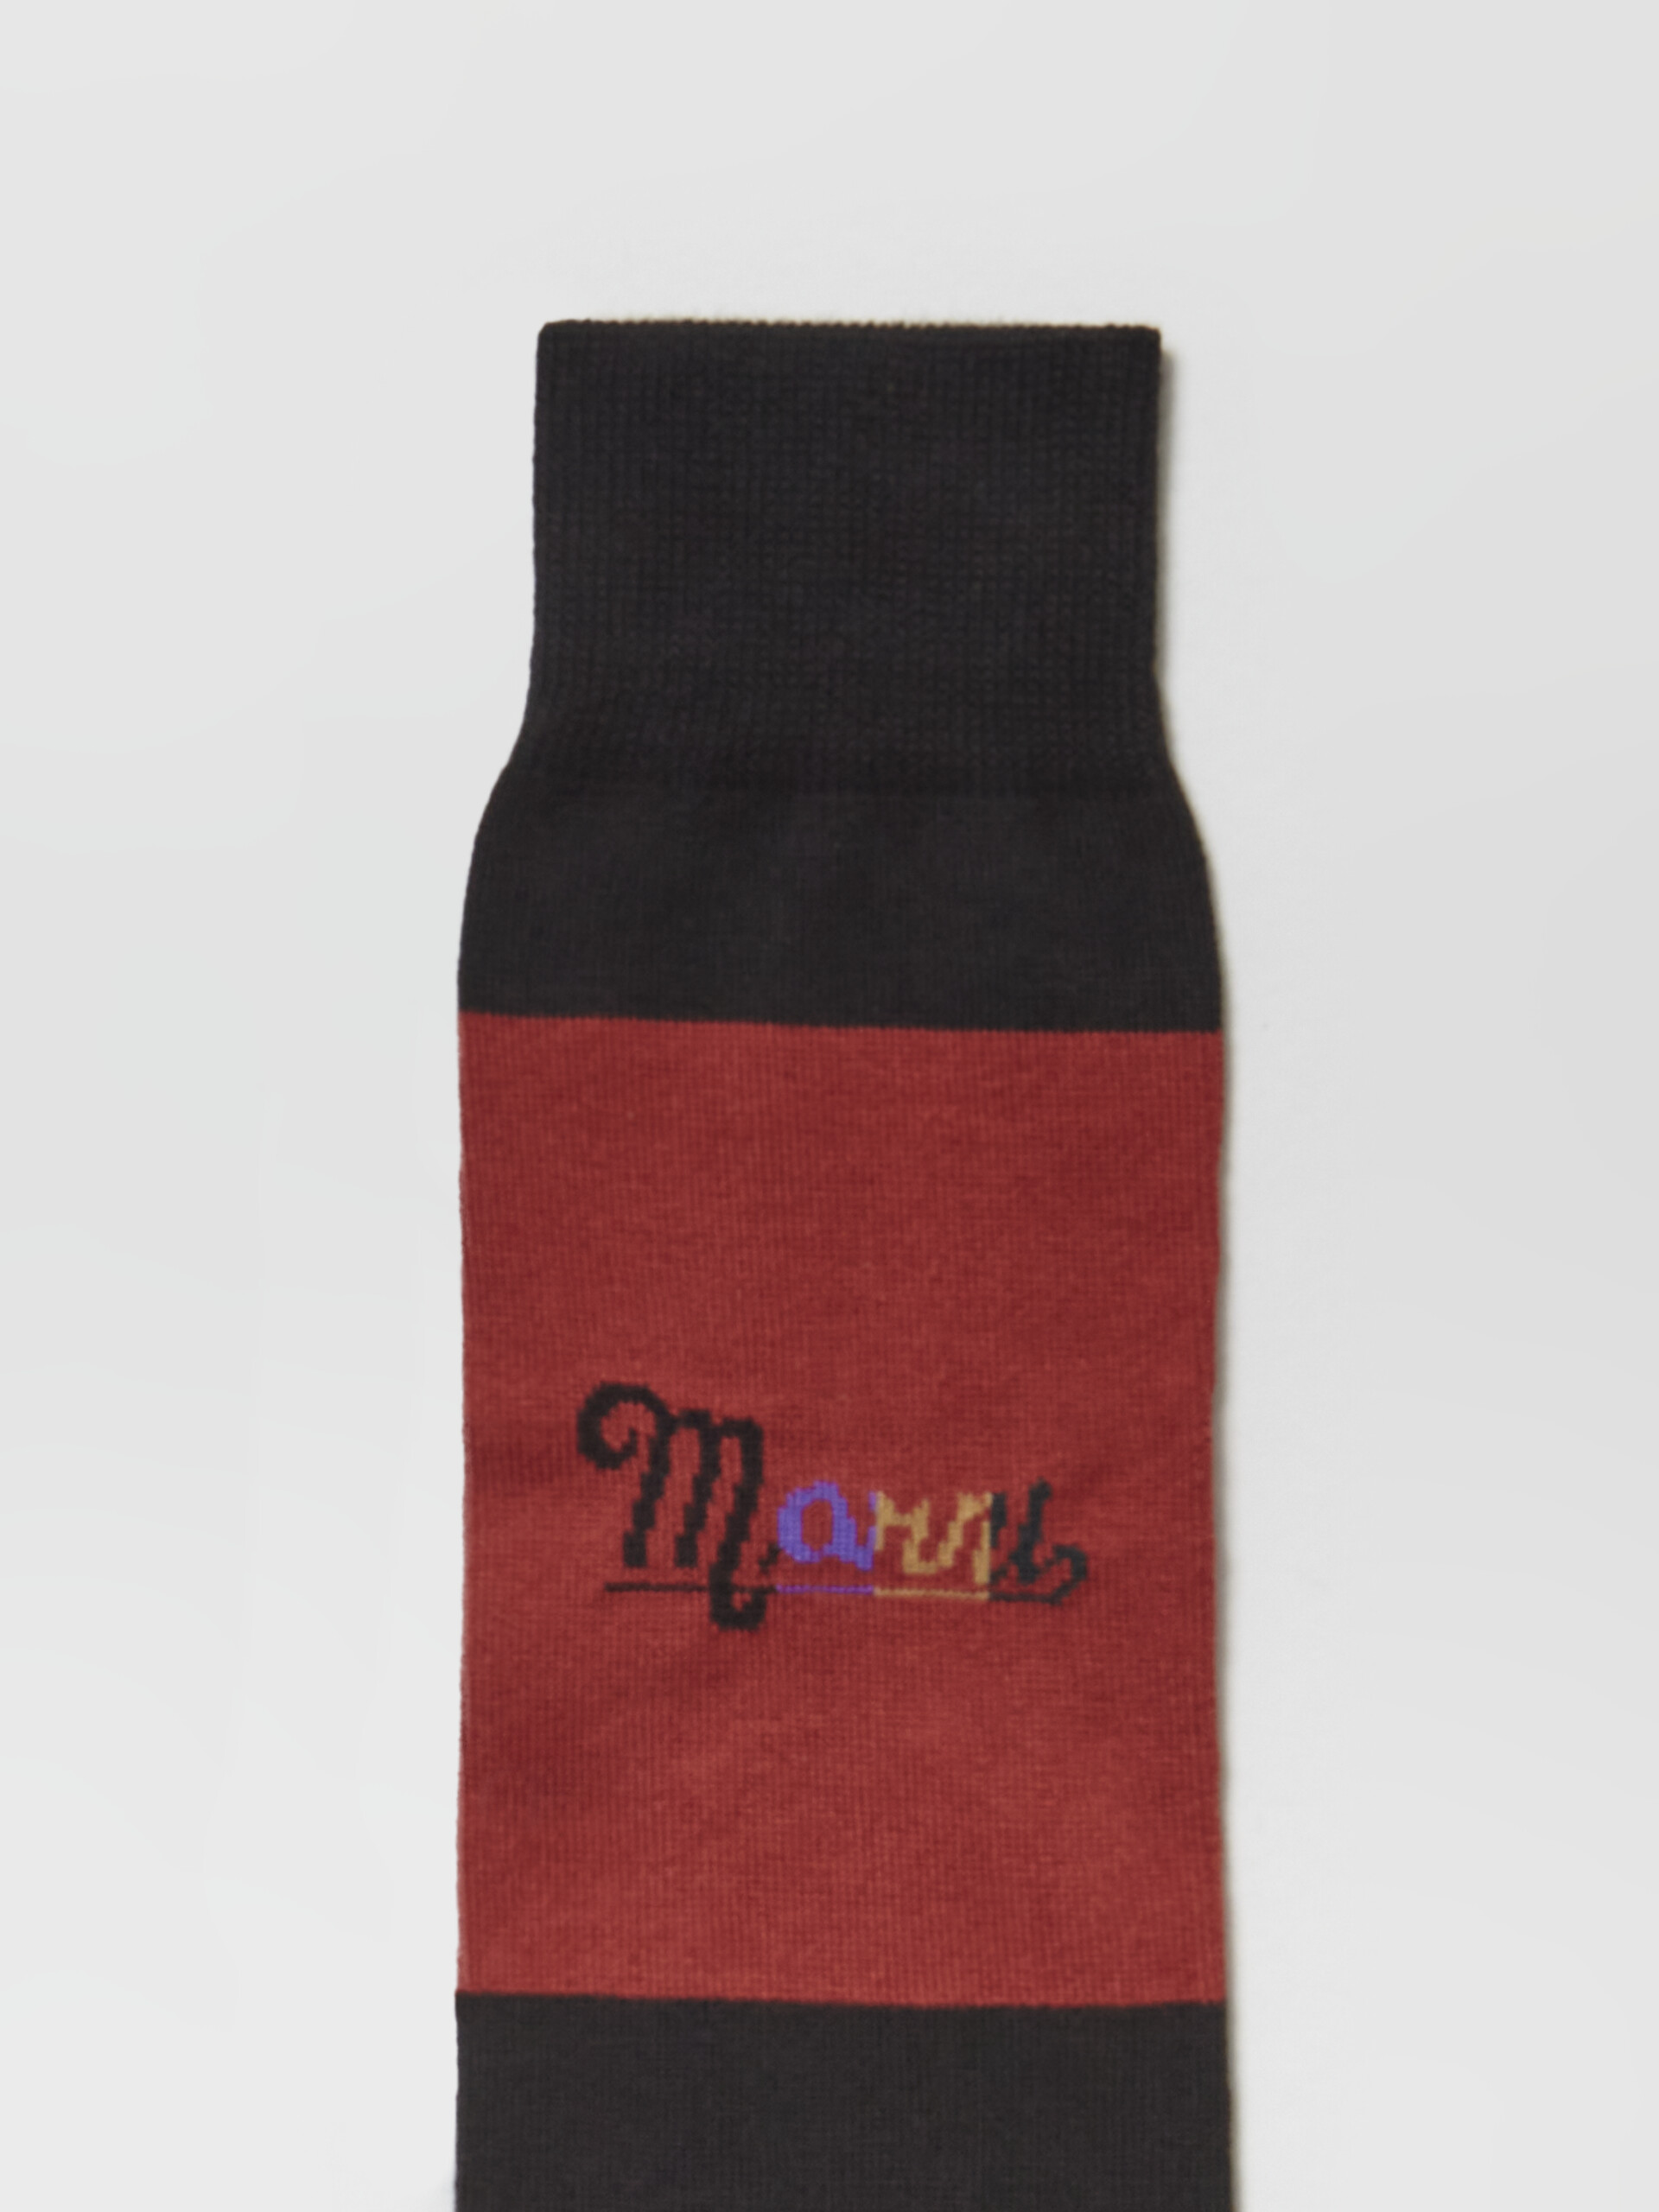 Calza in cotone rigato con logo intarsio arcobaleno nero e rosso - Calze - Image 3